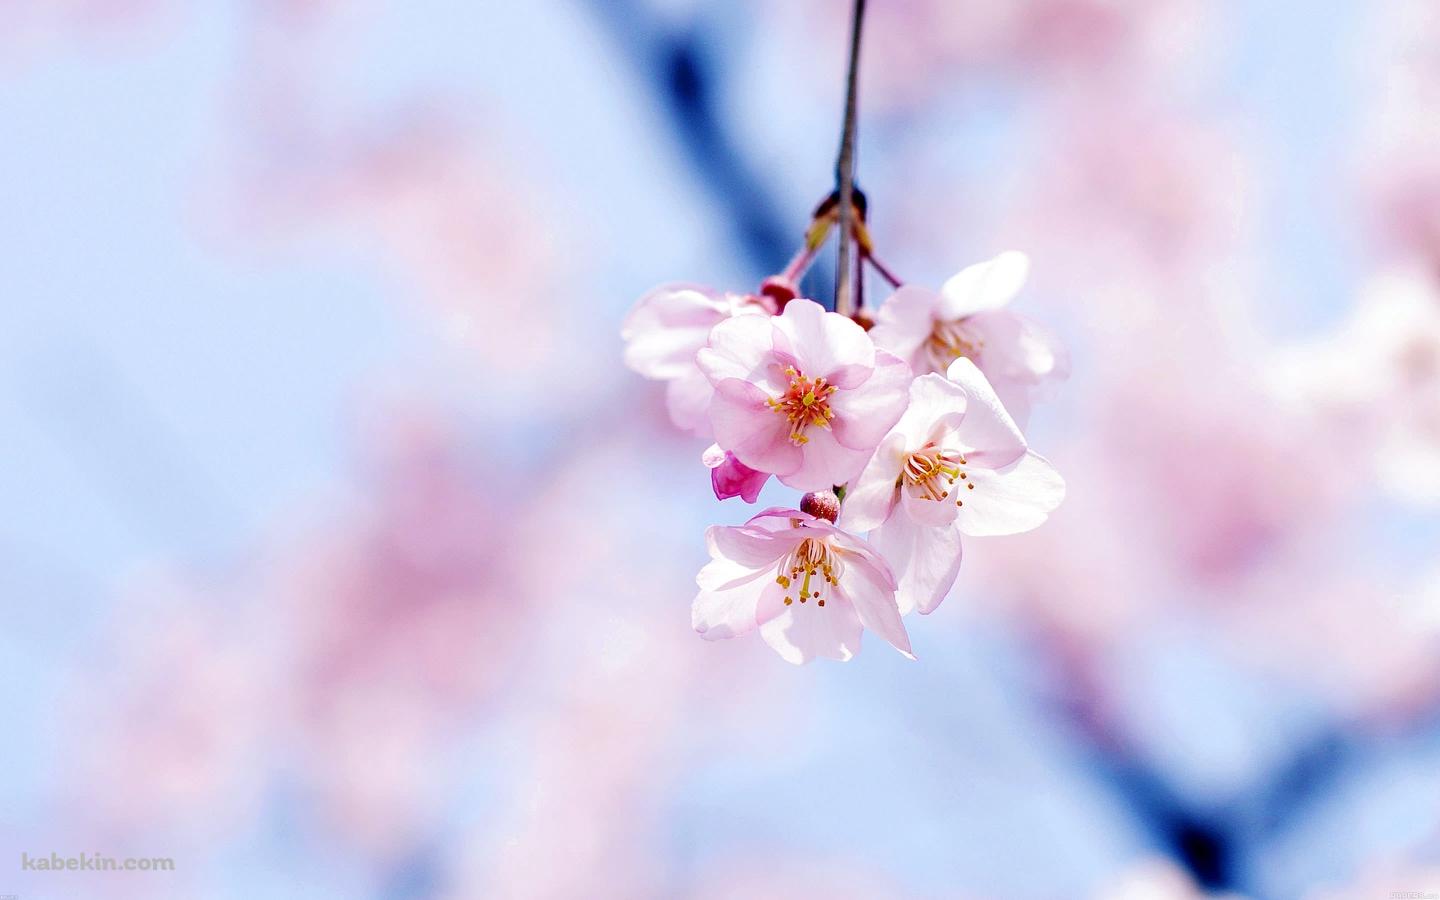 綺麗な桜の花の壁紙(1440px x 900px) 高画質 PC・デスクトップ用